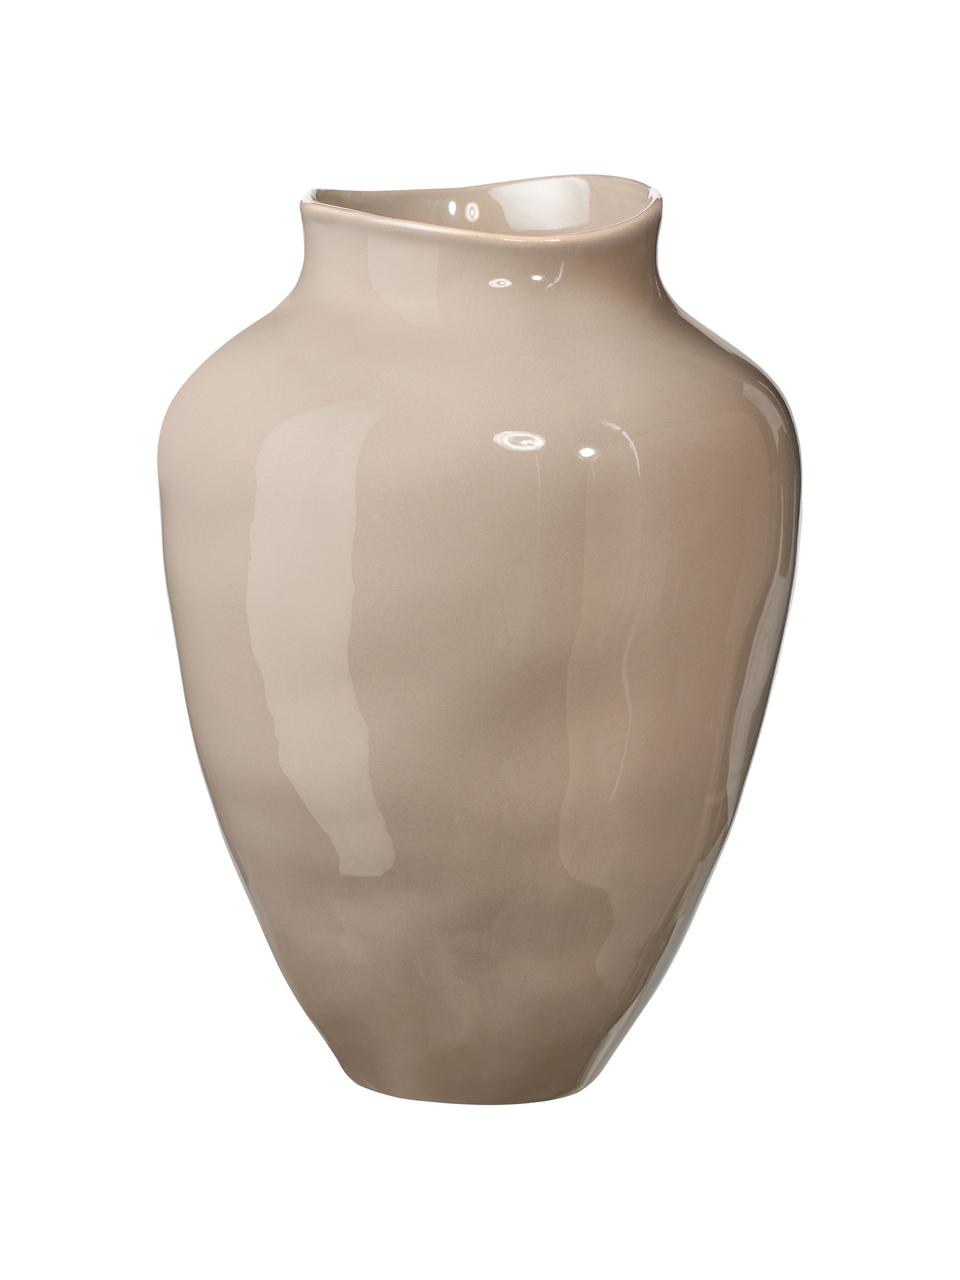 Handgefertigte Vase Latona von Isabelle Hartmann, Steingut, Taupe, glänzend, Ø 21 x H 30 cm